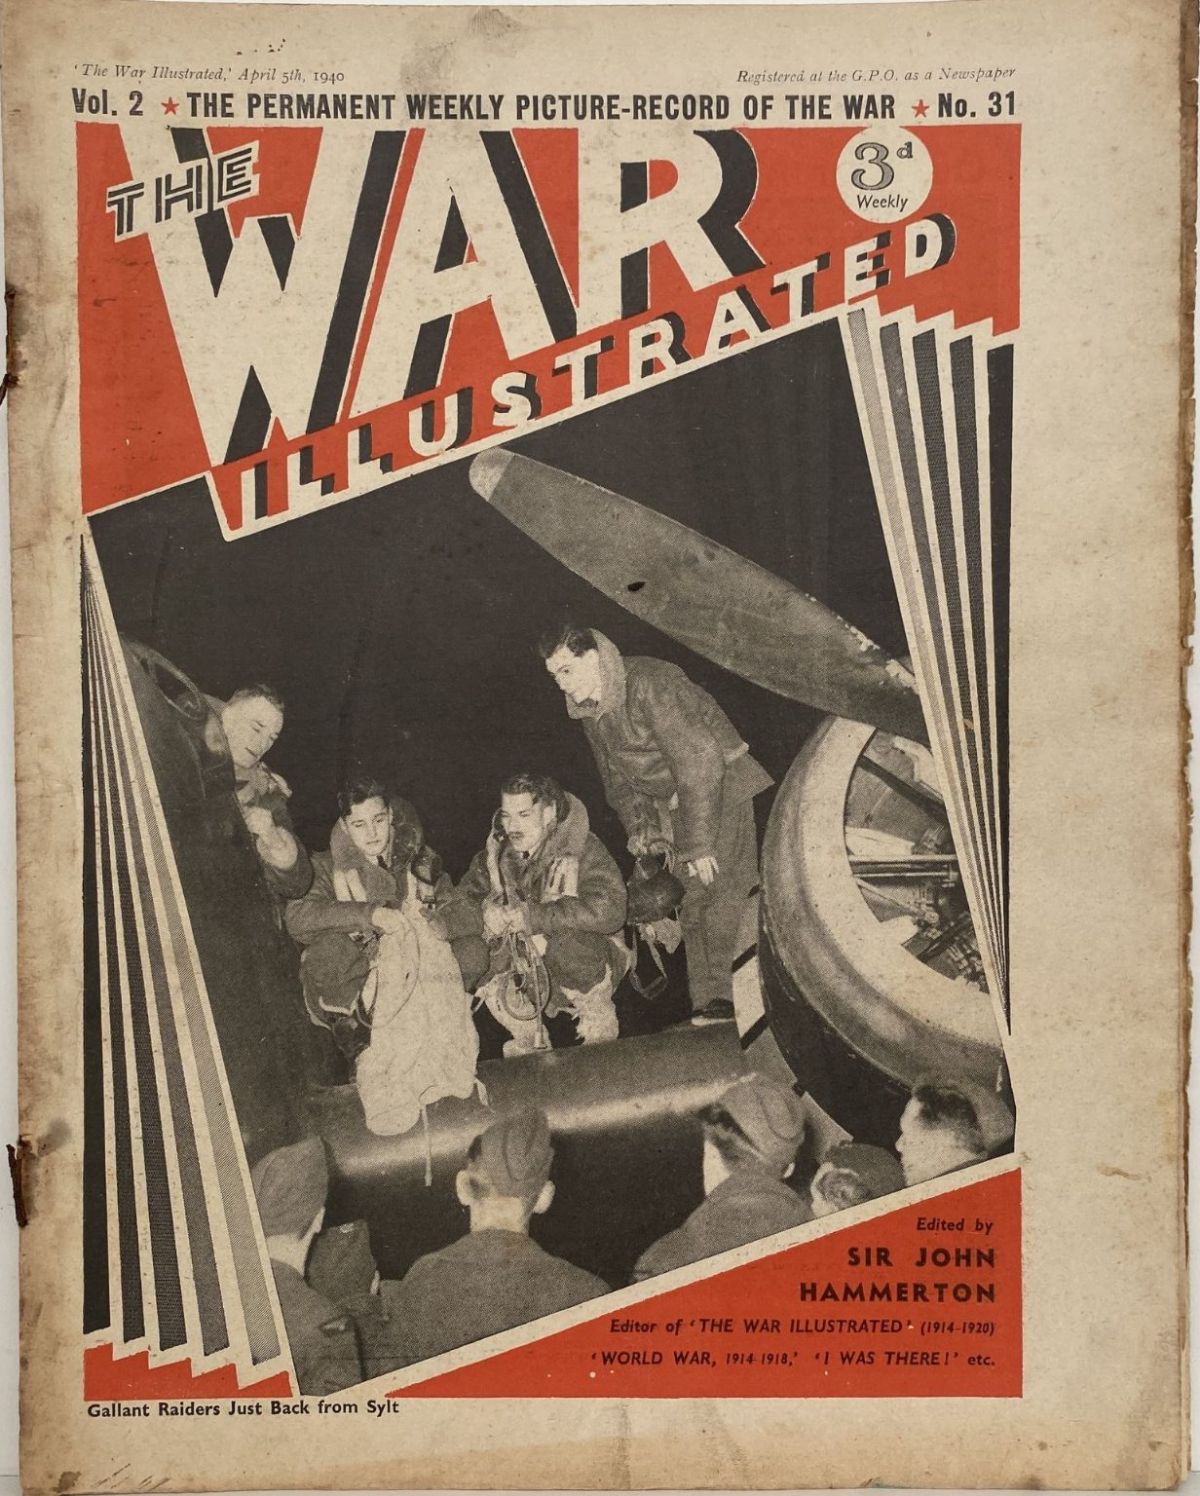 THE WAR ILLUSTRATED - Vol 2, No 31, 5th April 1940